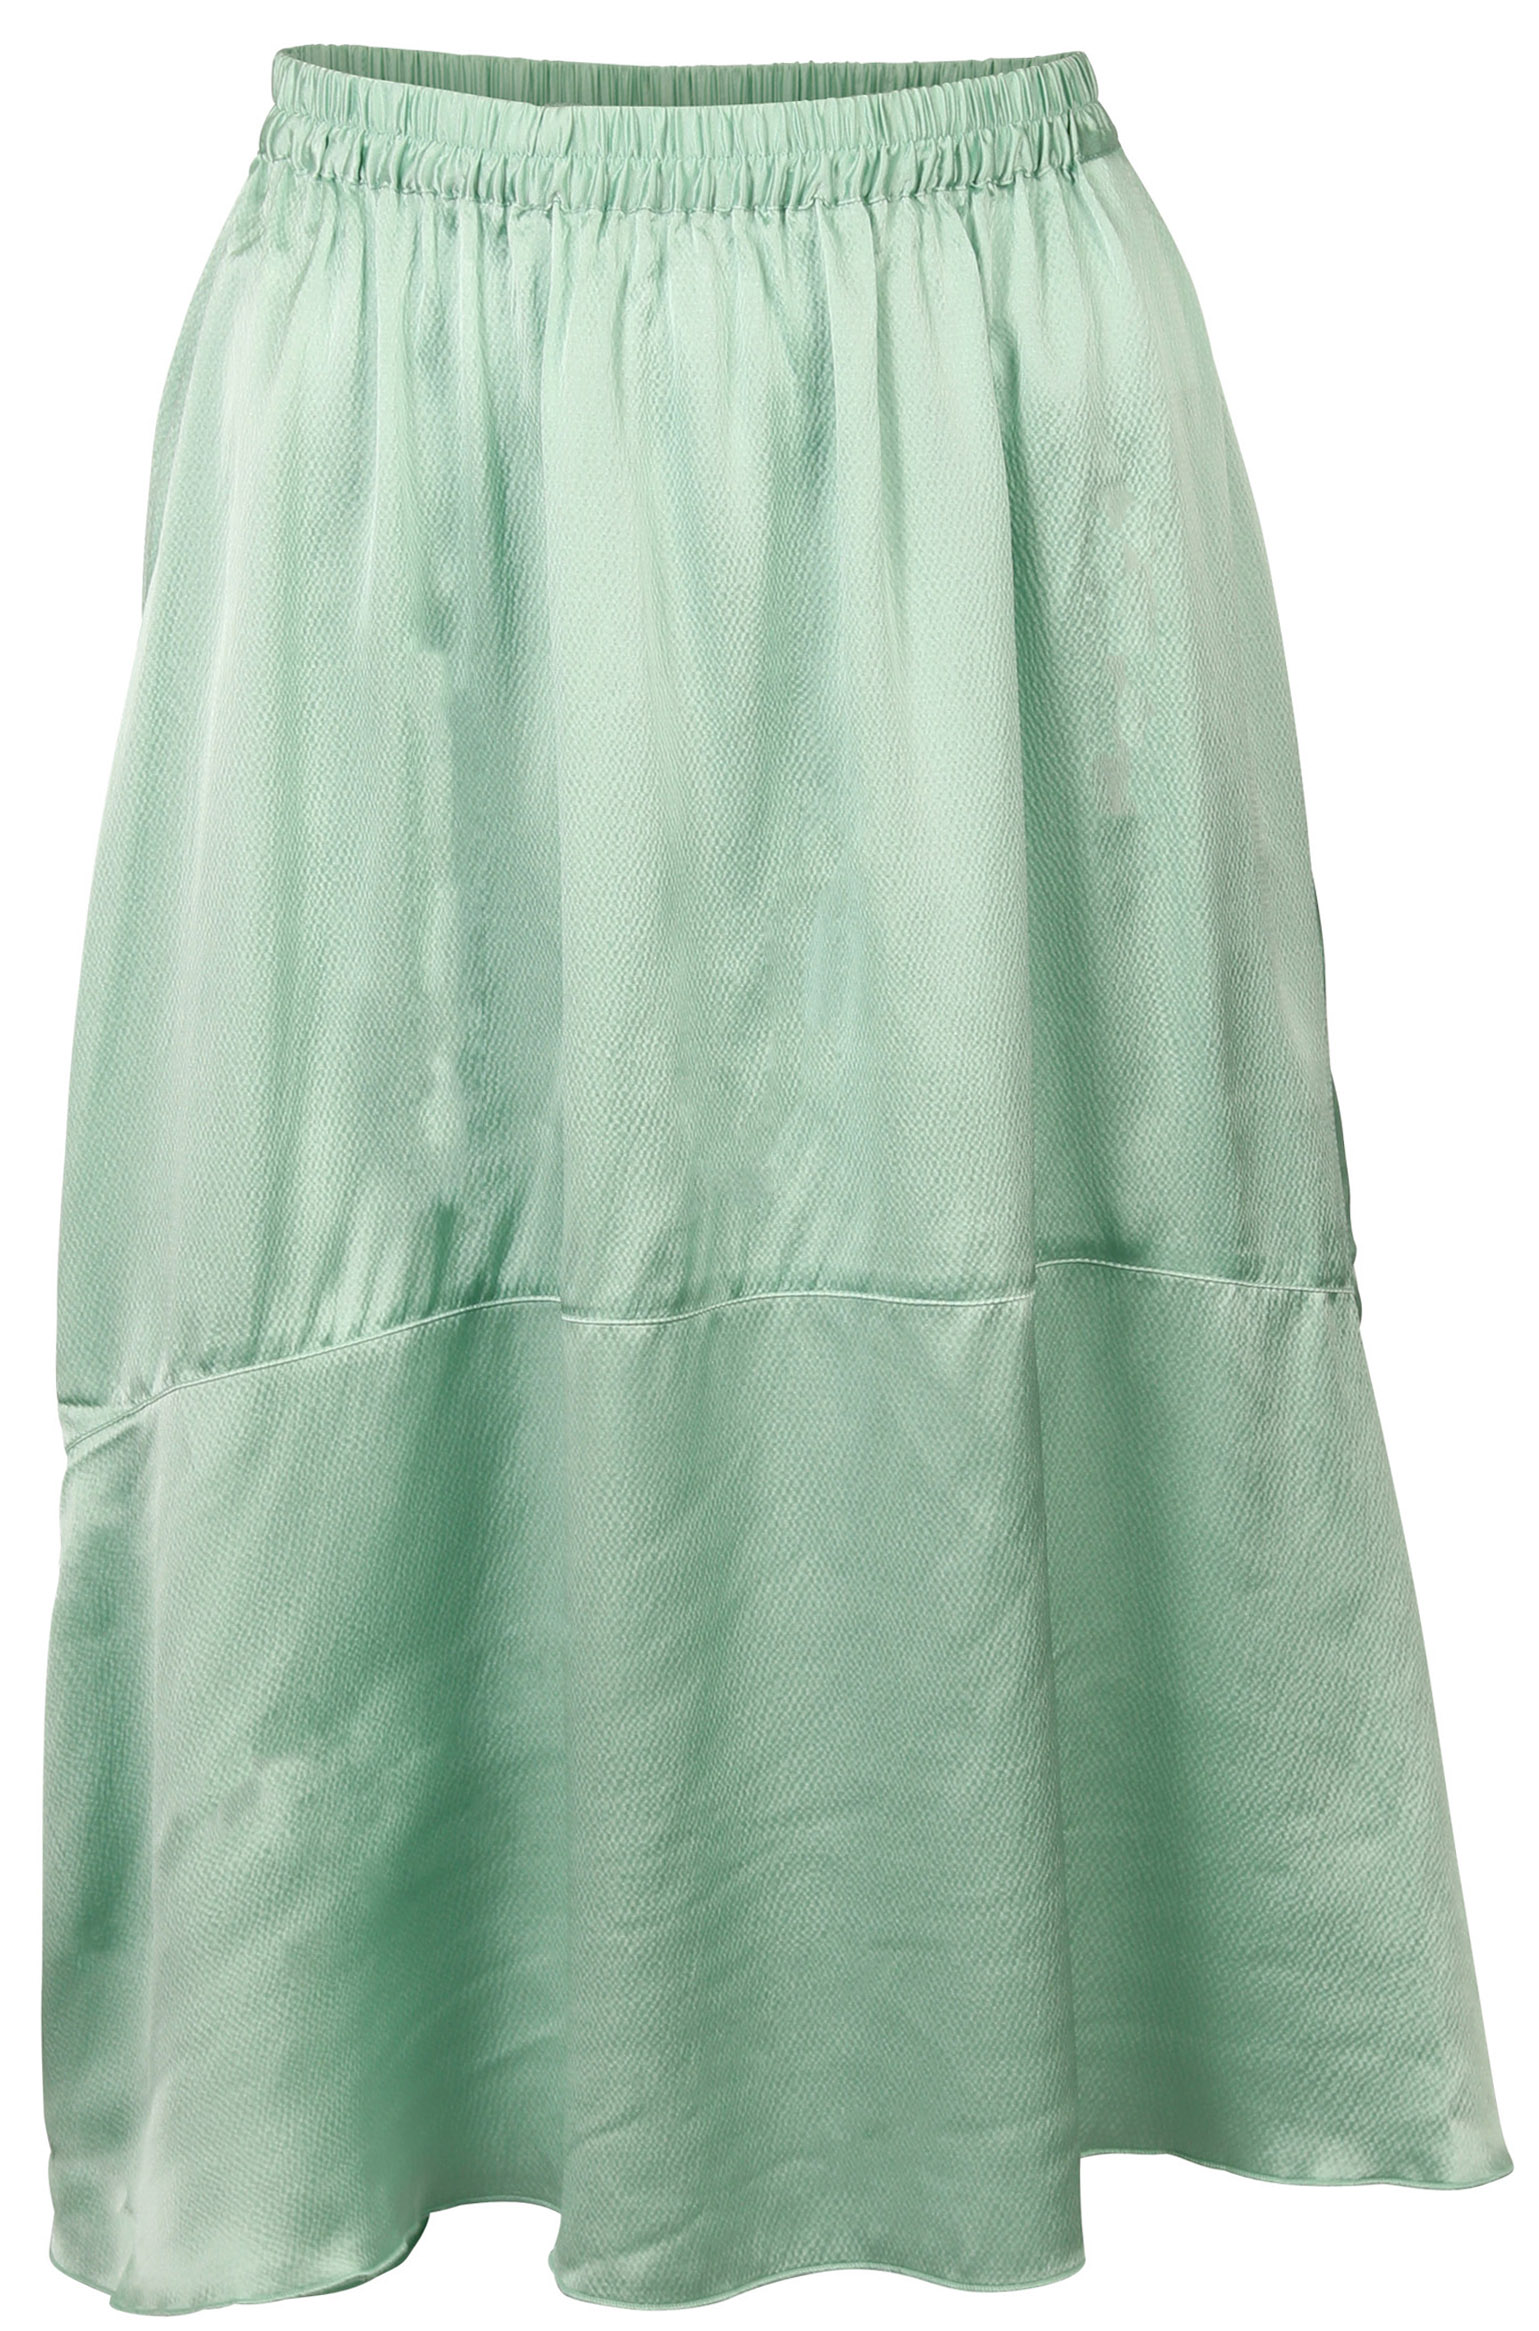 FWSS Skirt Lisbet Jade Green XS